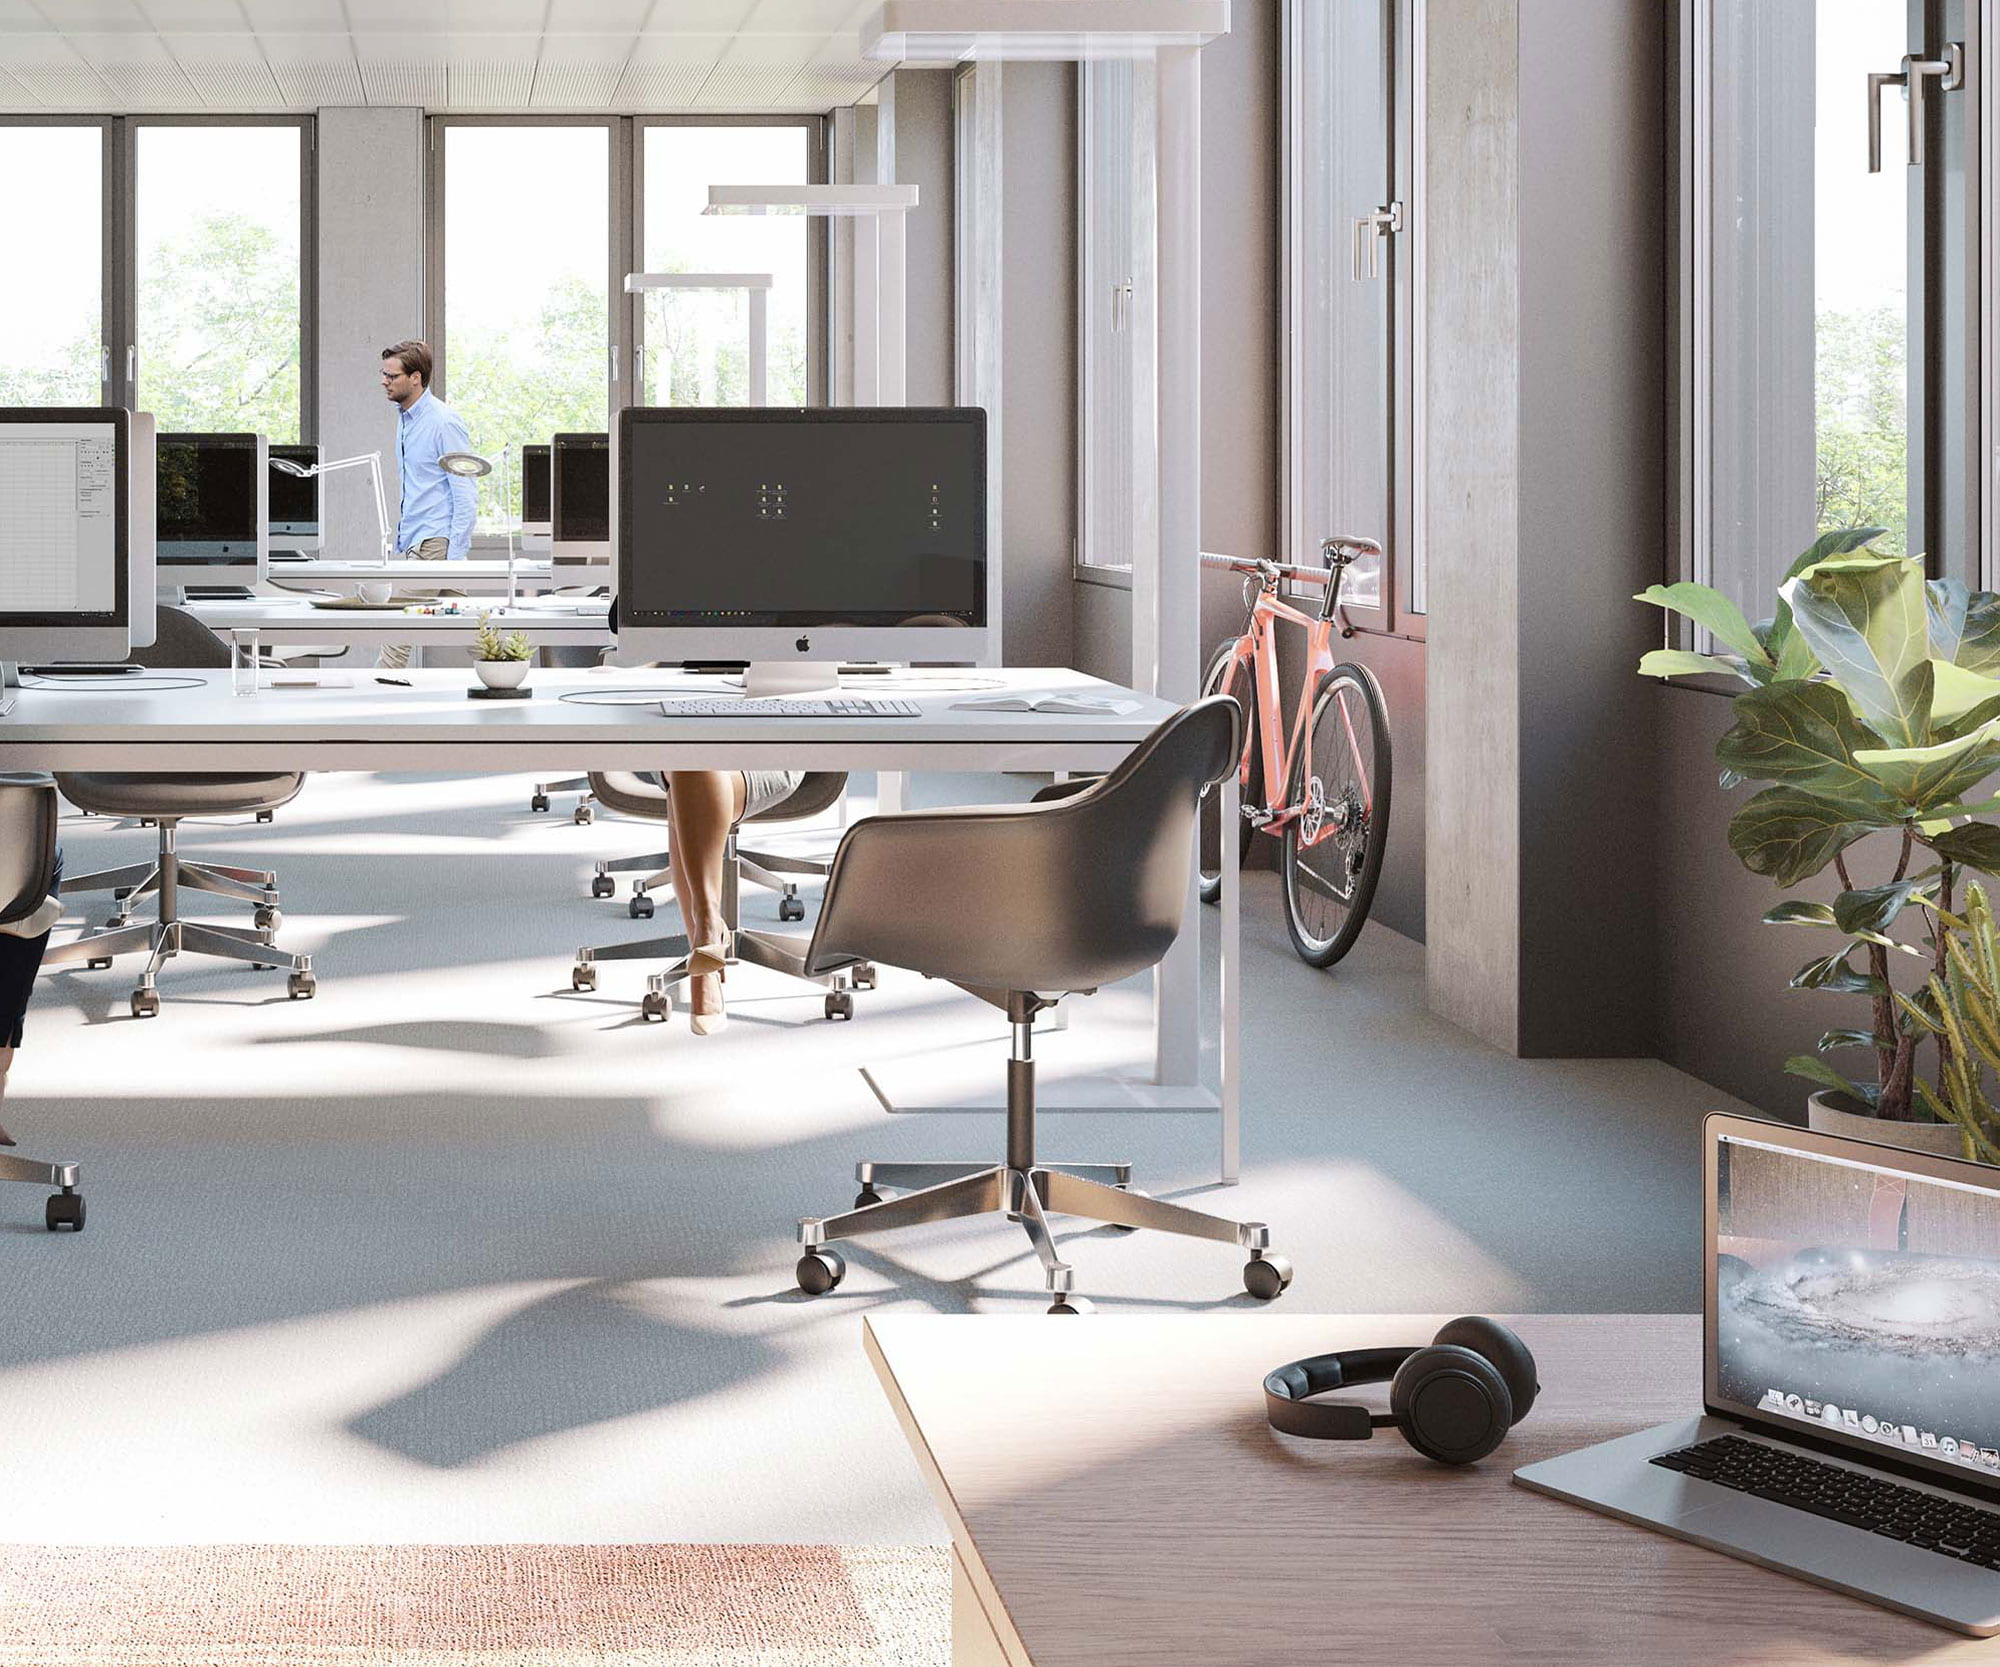 Fotorealistische Illustration der ausgebauten Geschossfläche zum modernen Großraumbüro mit exemplarischer Einrichtung.